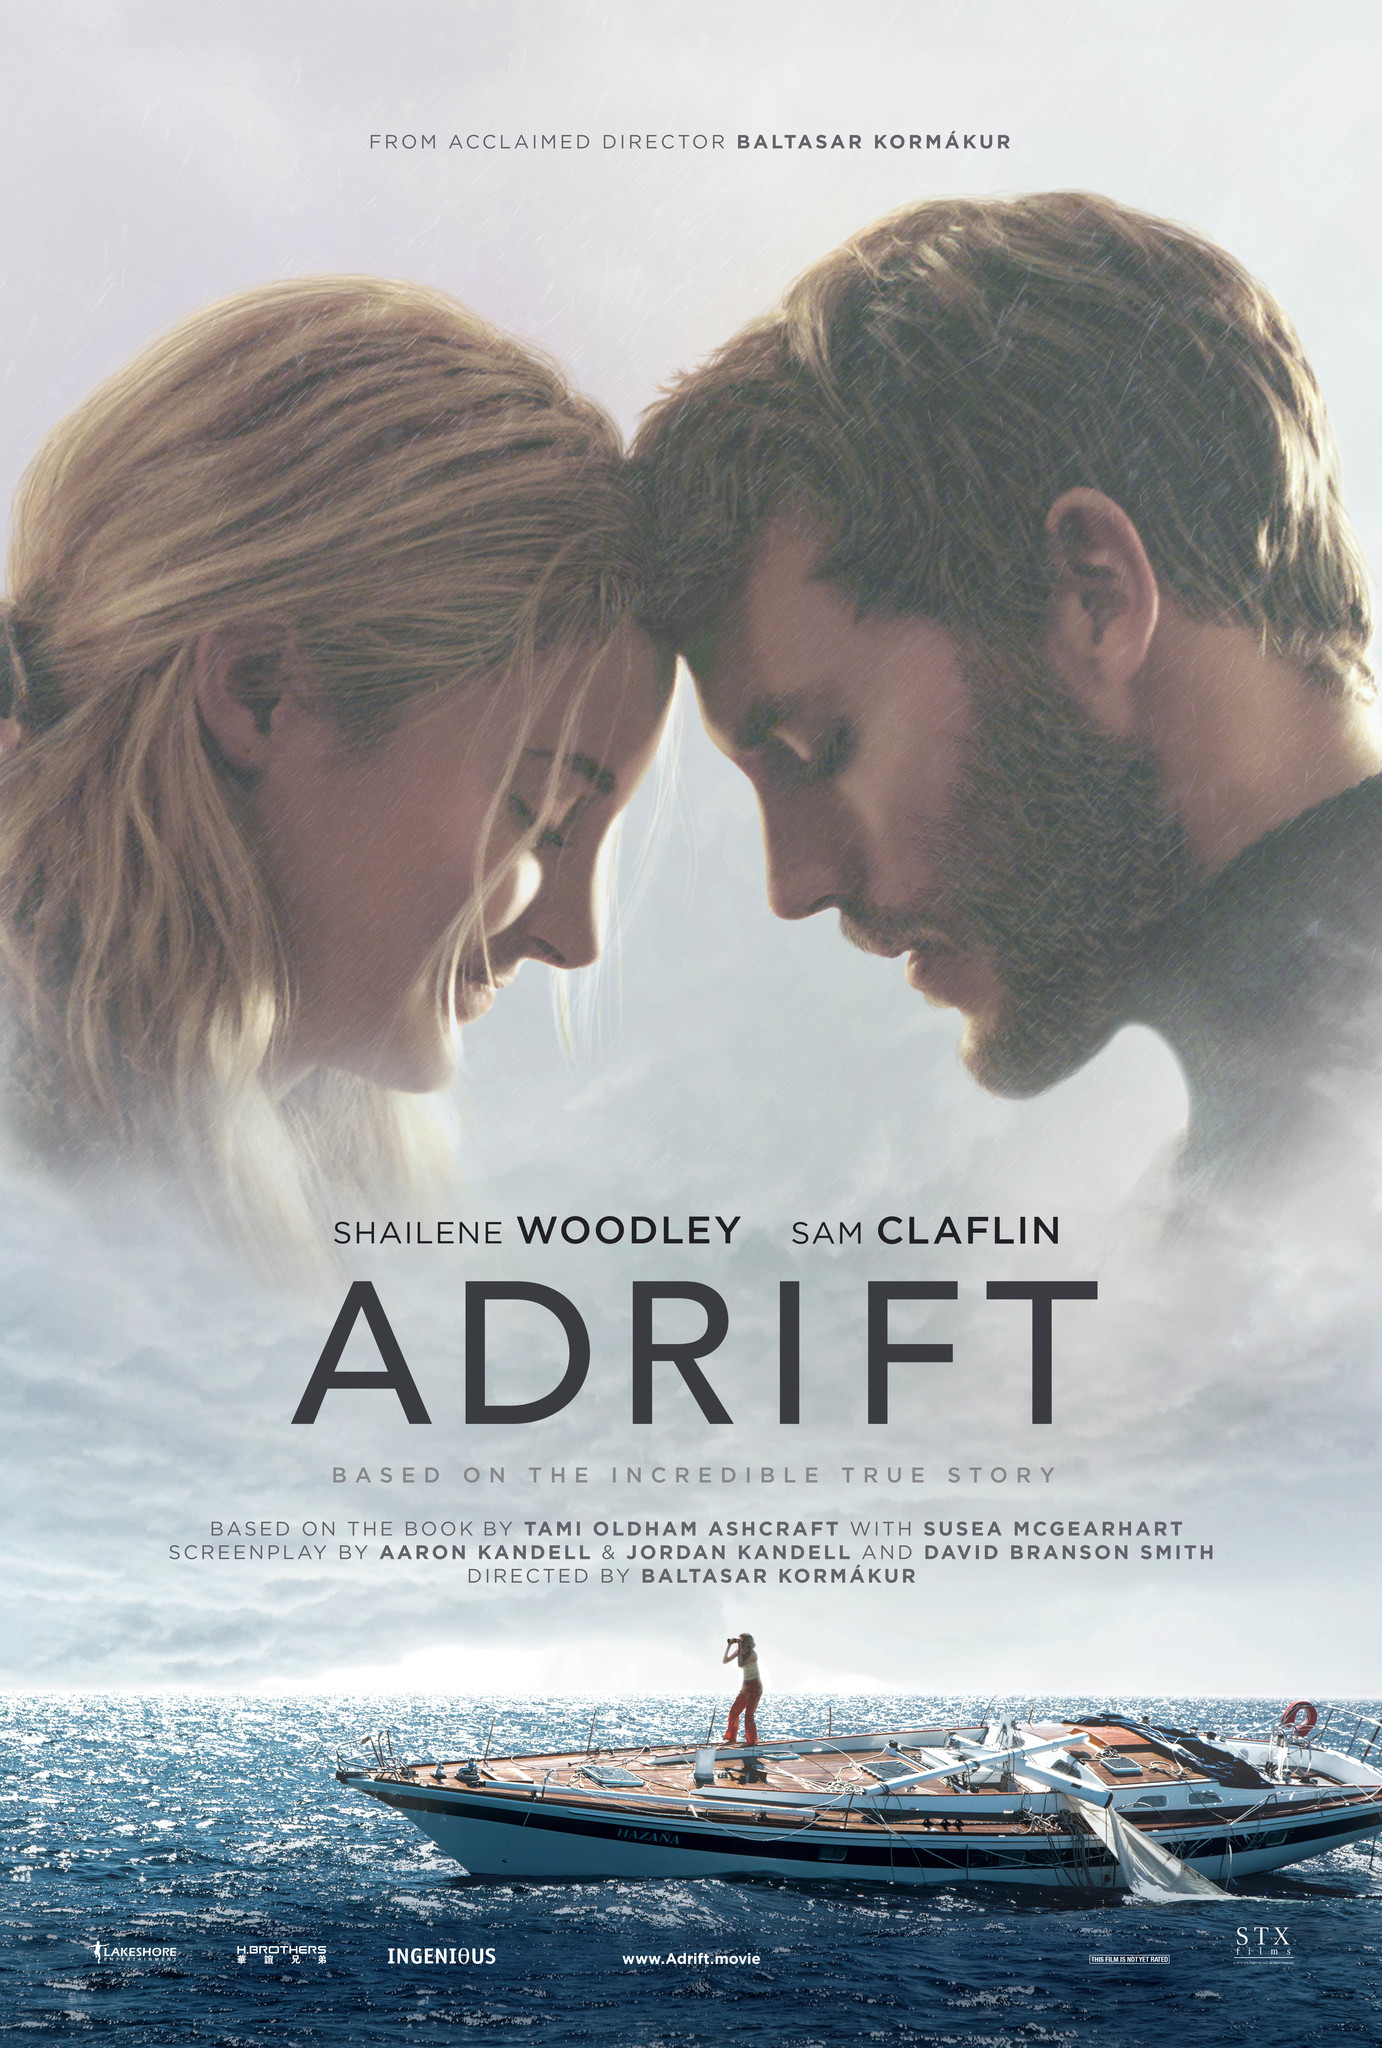 ดูหนังออนไลน์ฟรี Adrift 2018  รักเธอฝ่าเฮอร์ริเคน  เว็บดูหนังใหม่ออนไลน์ฟรี